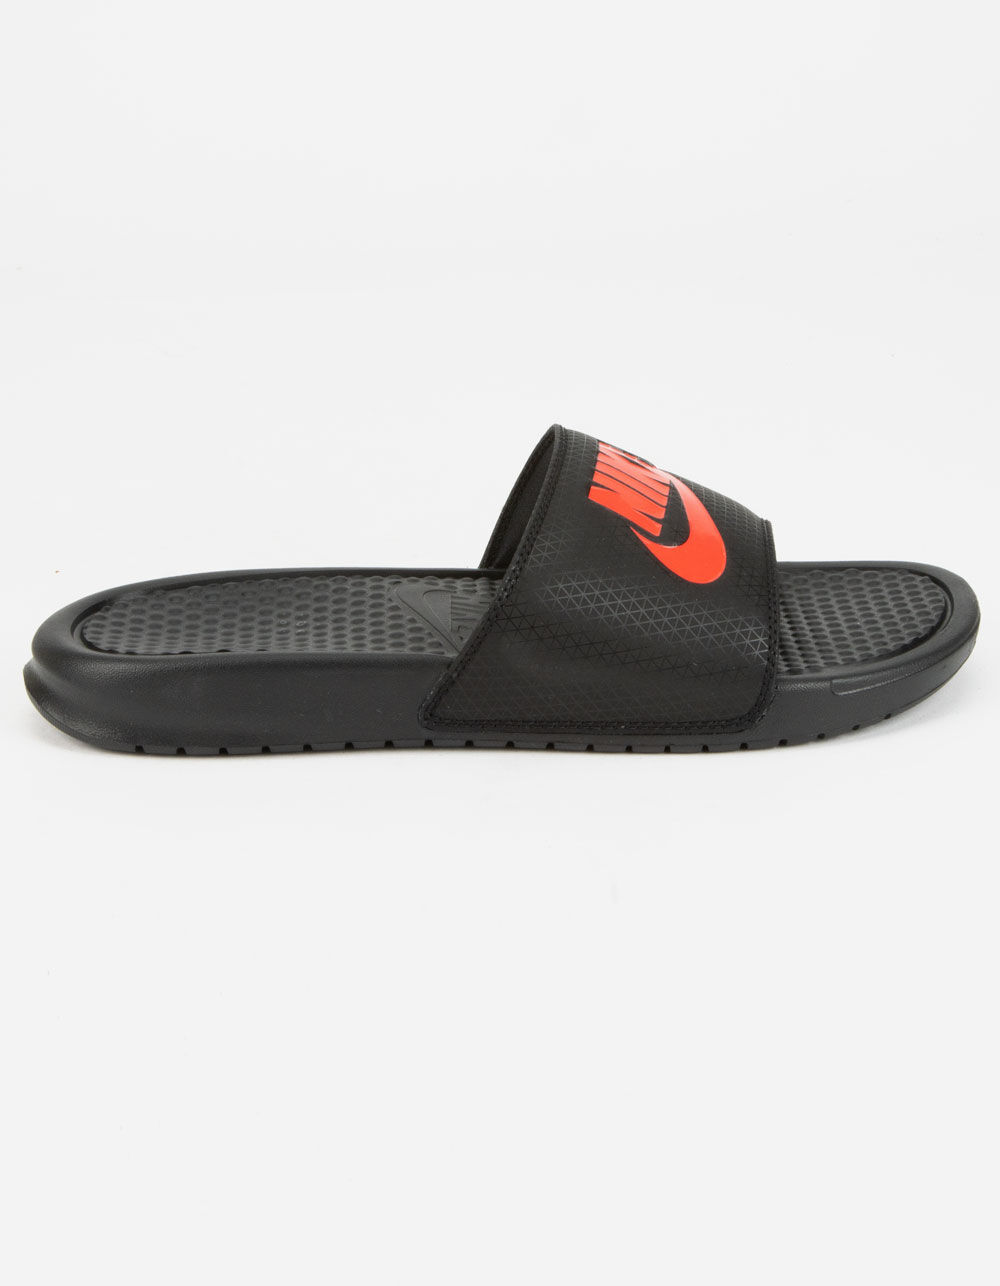 NIKE Benassi JDI Mens Black & Red Slide Sandals - BLACK/RED | Tillys